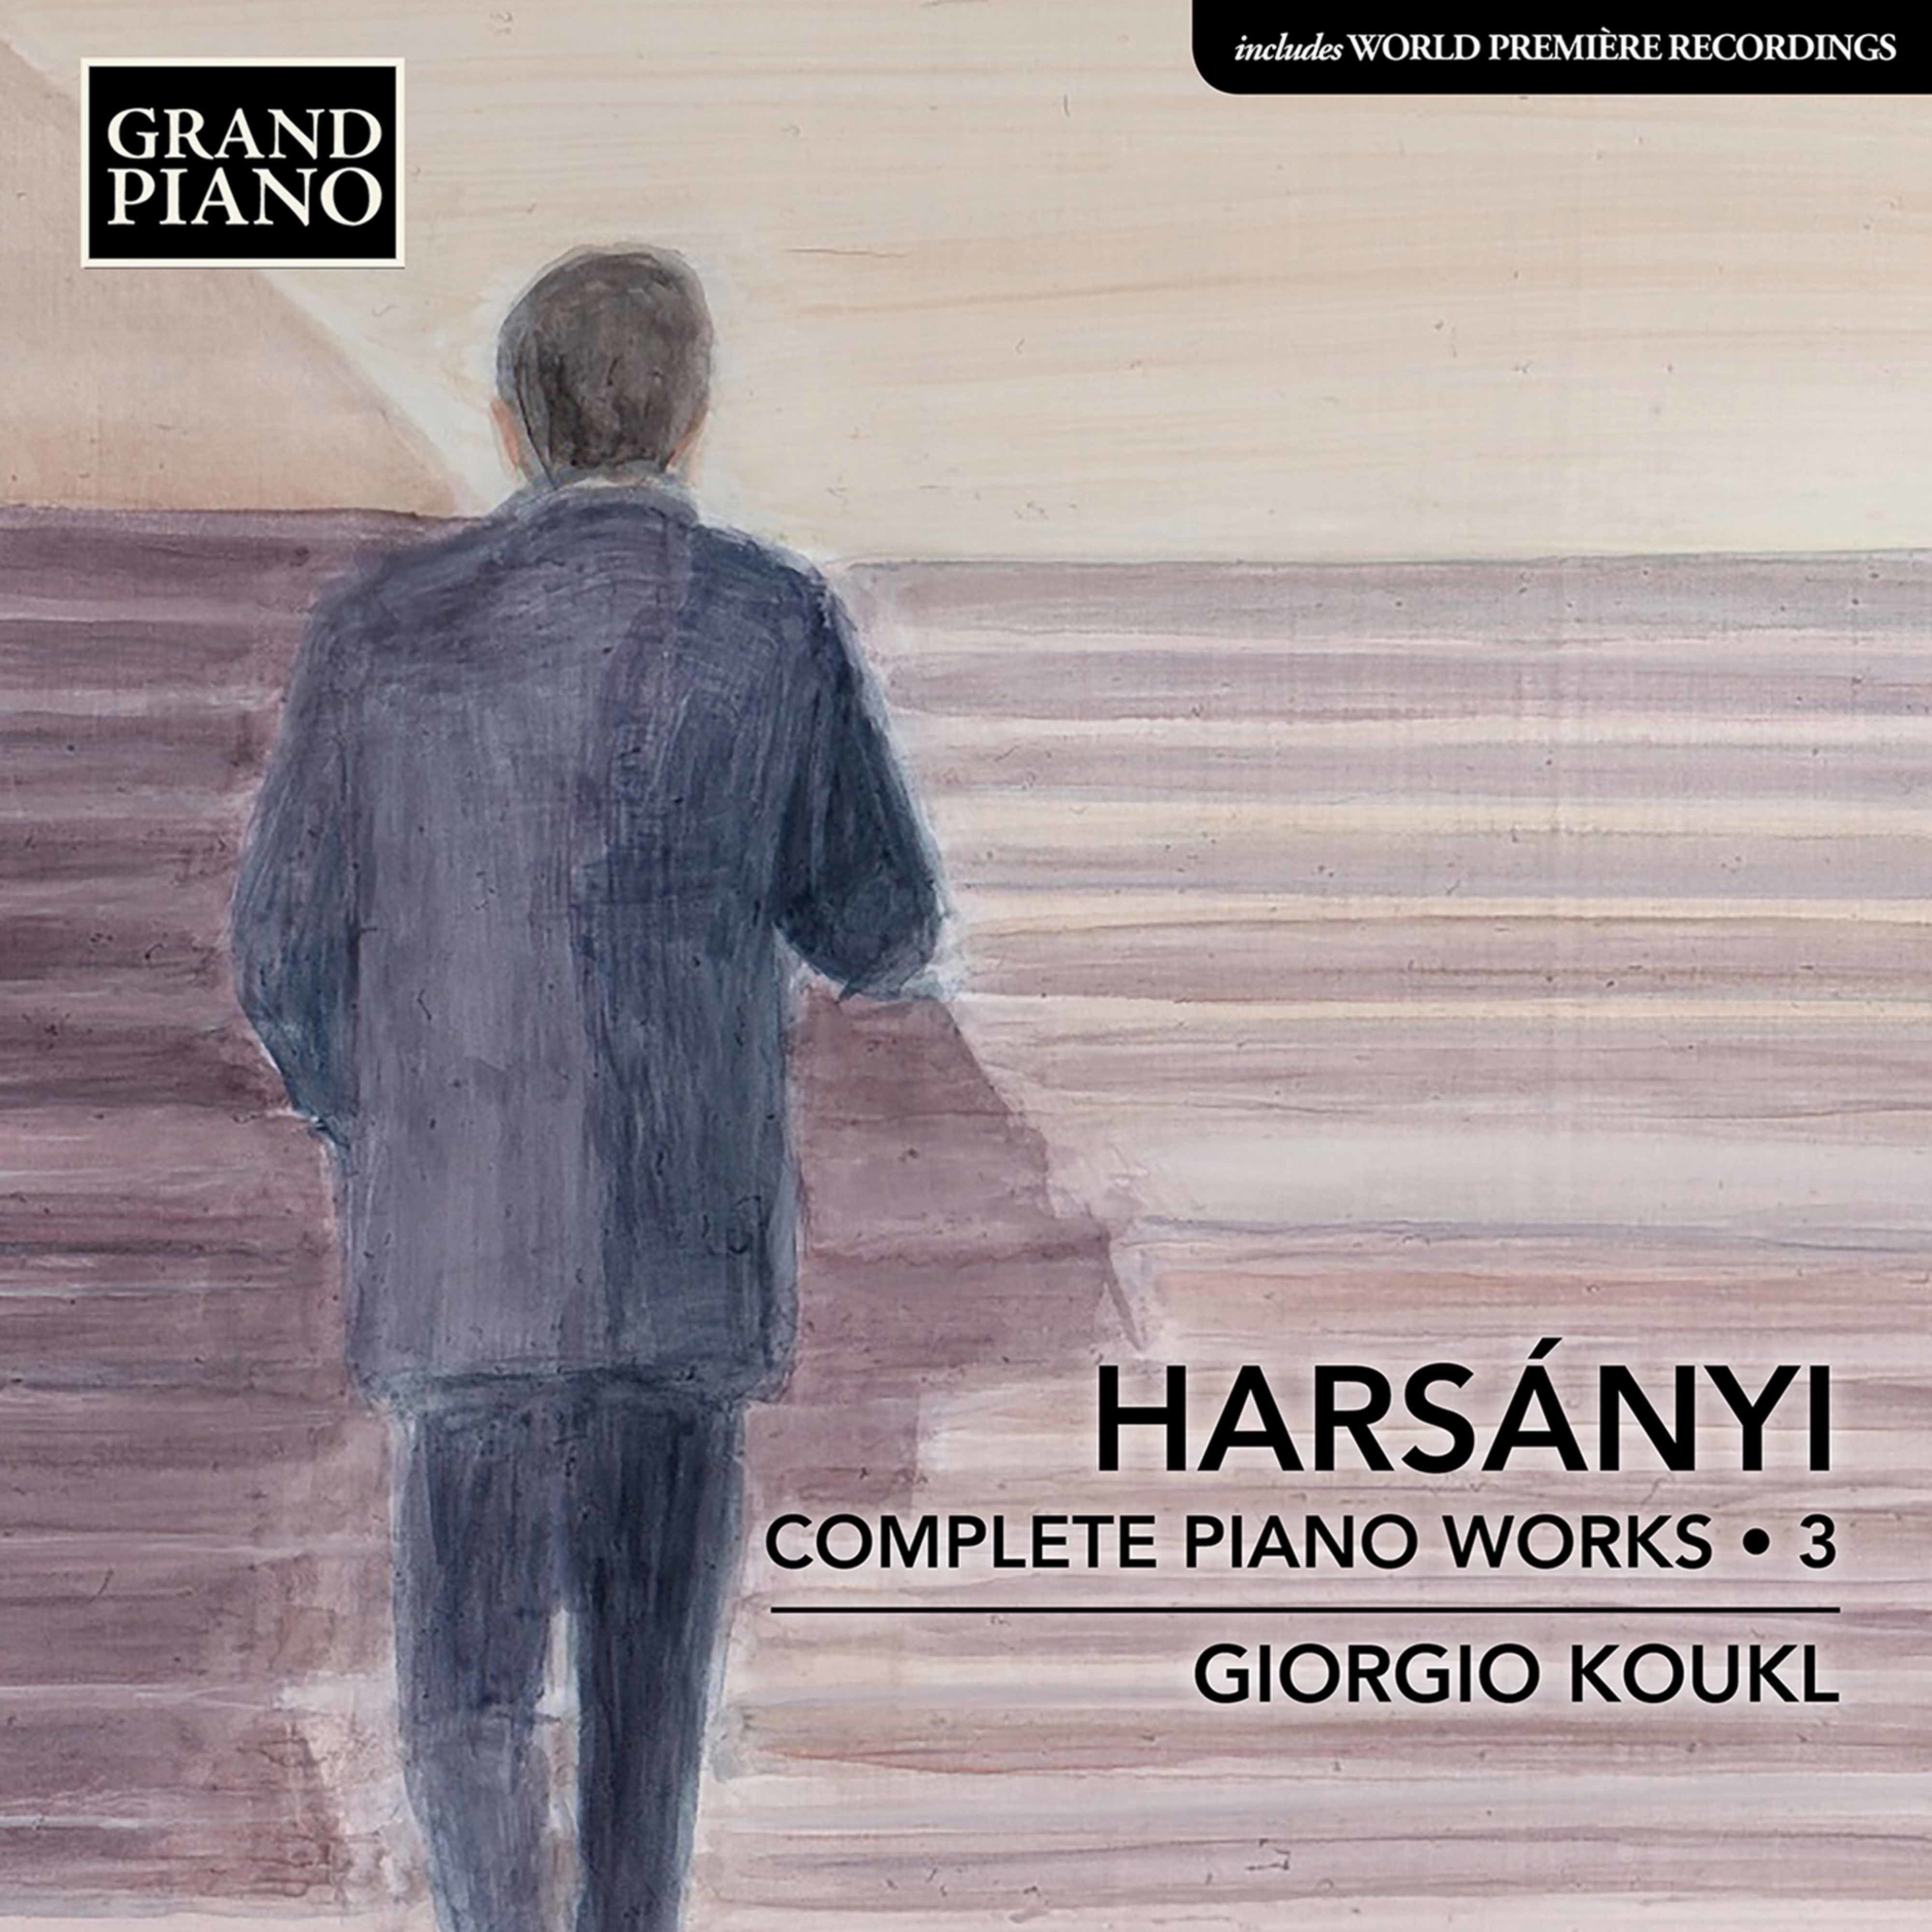 Giorgio Koukl – Harsanyi: Complete Piano Works, Vol. 3 (2021) [FLAC 24bit/96kHz]